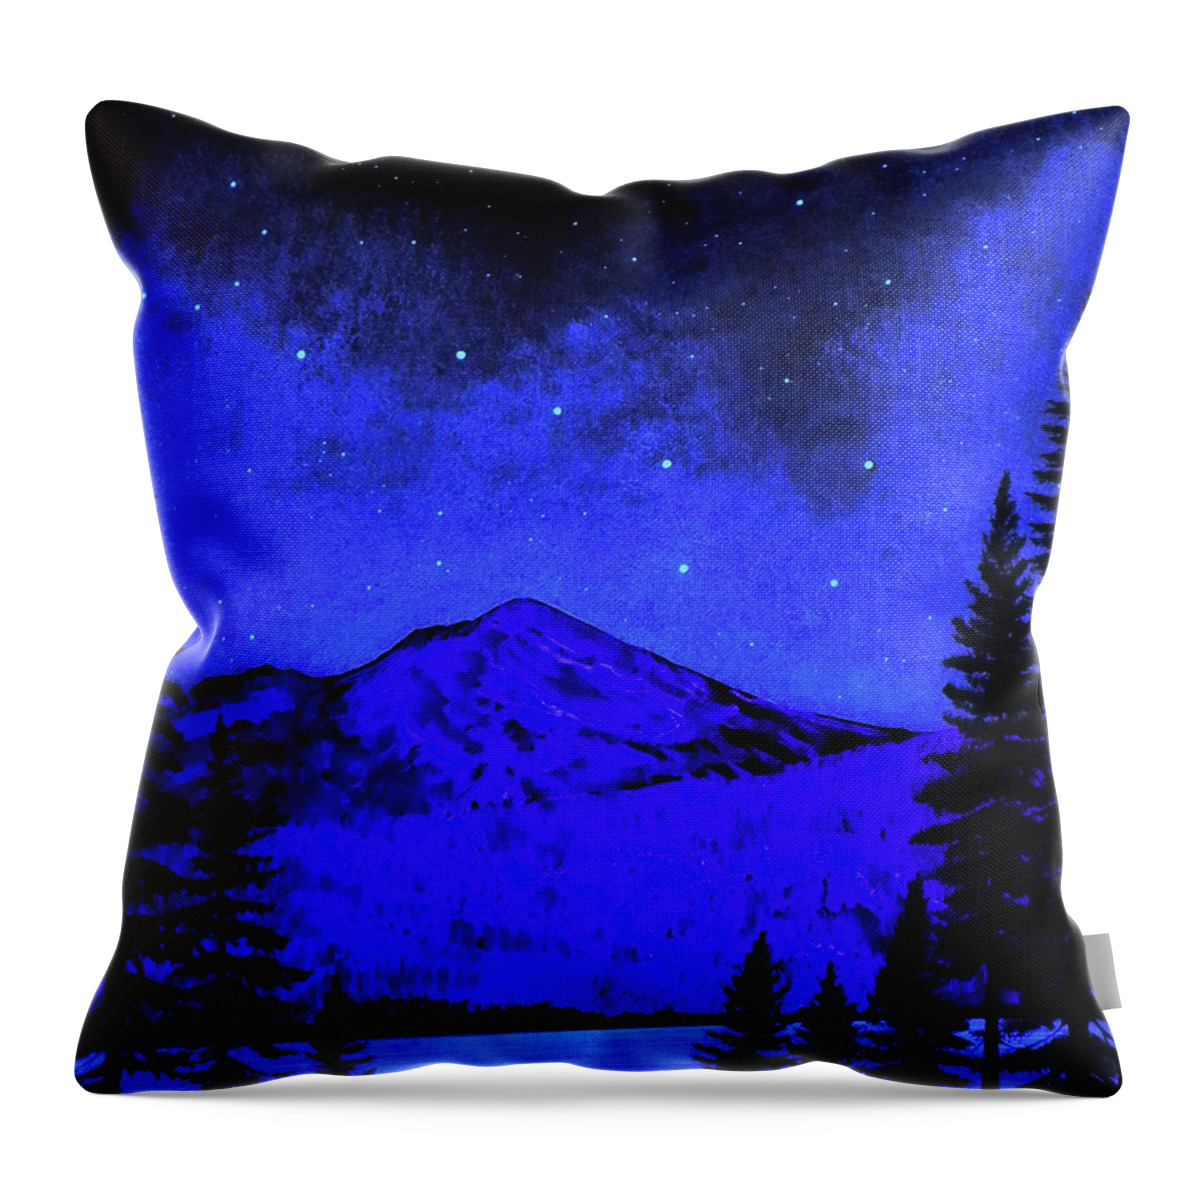 Mount Shasta In Starlight Throw Pillow featuring the painting Mount Shasta in Starlight by Frank Wilson